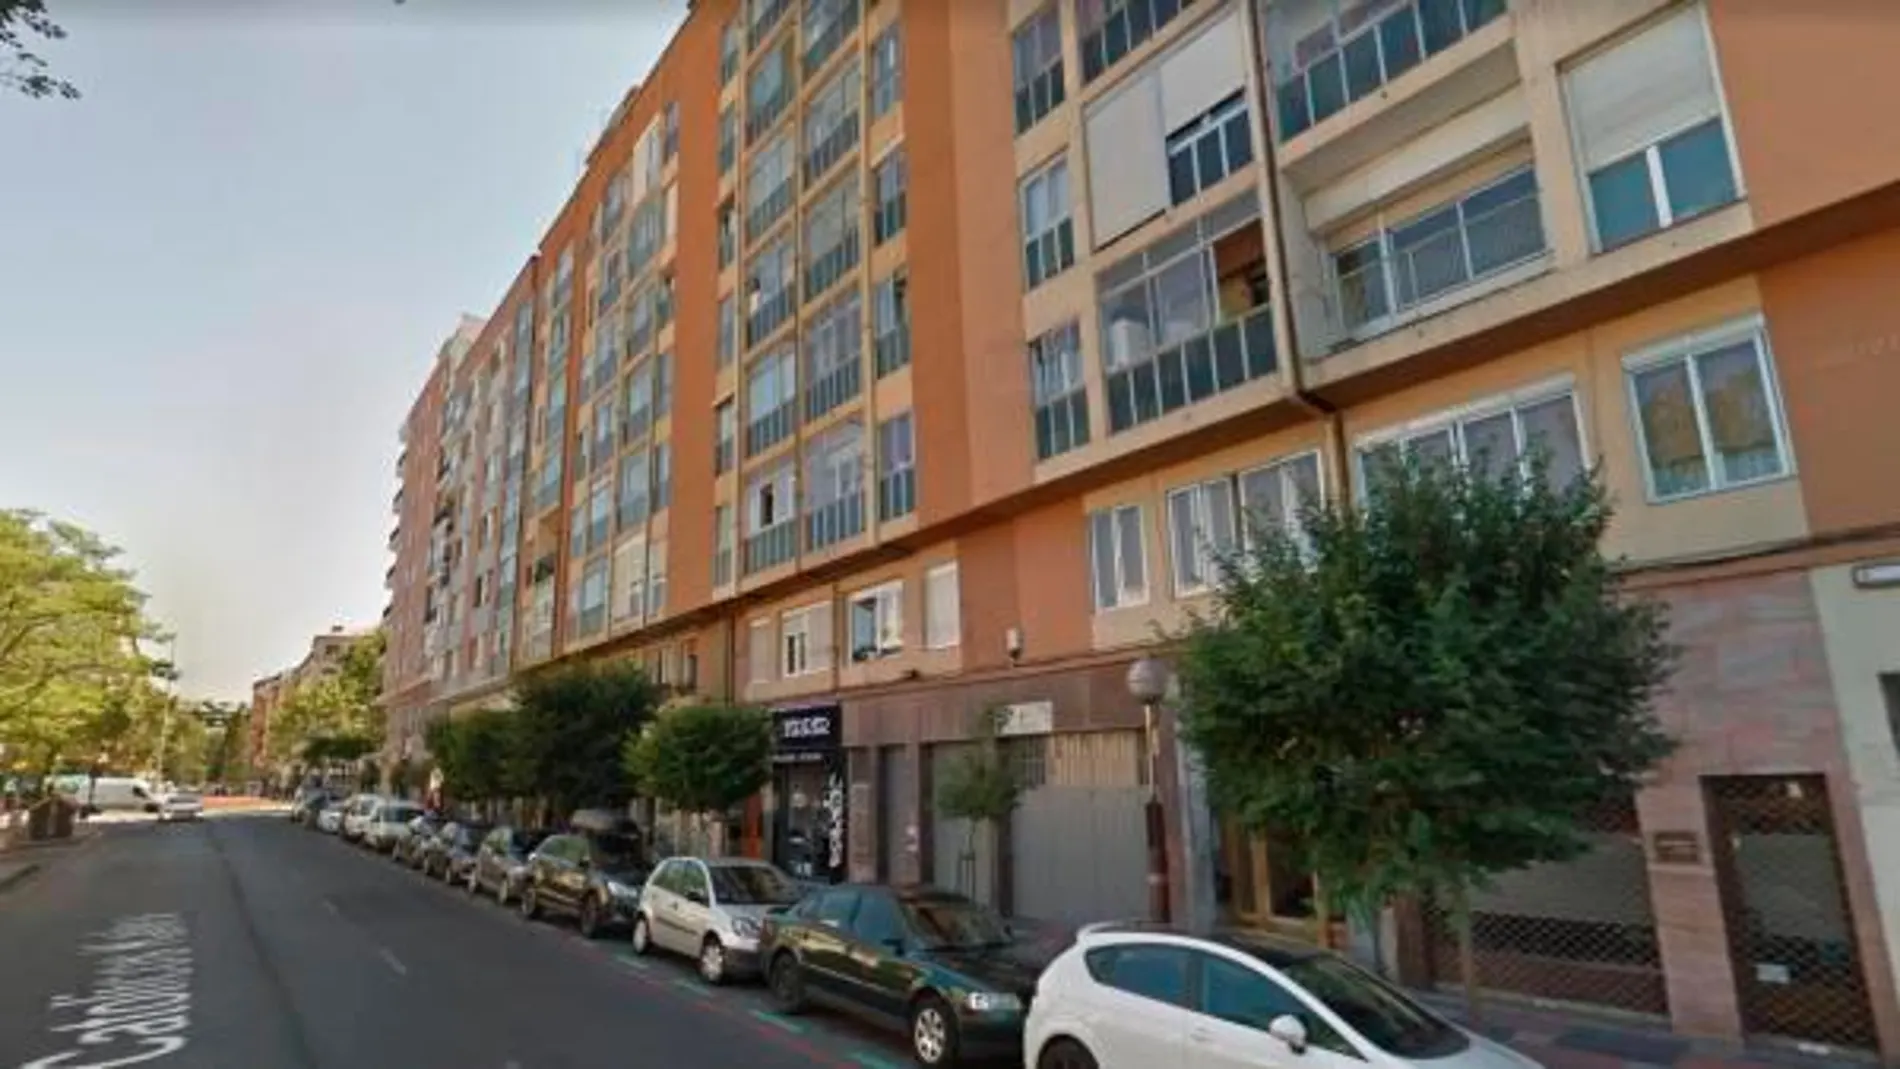 Imagen de la calle Reyes Católicos de Vitoria, donde ha ocurrido el suceso / Google Maps